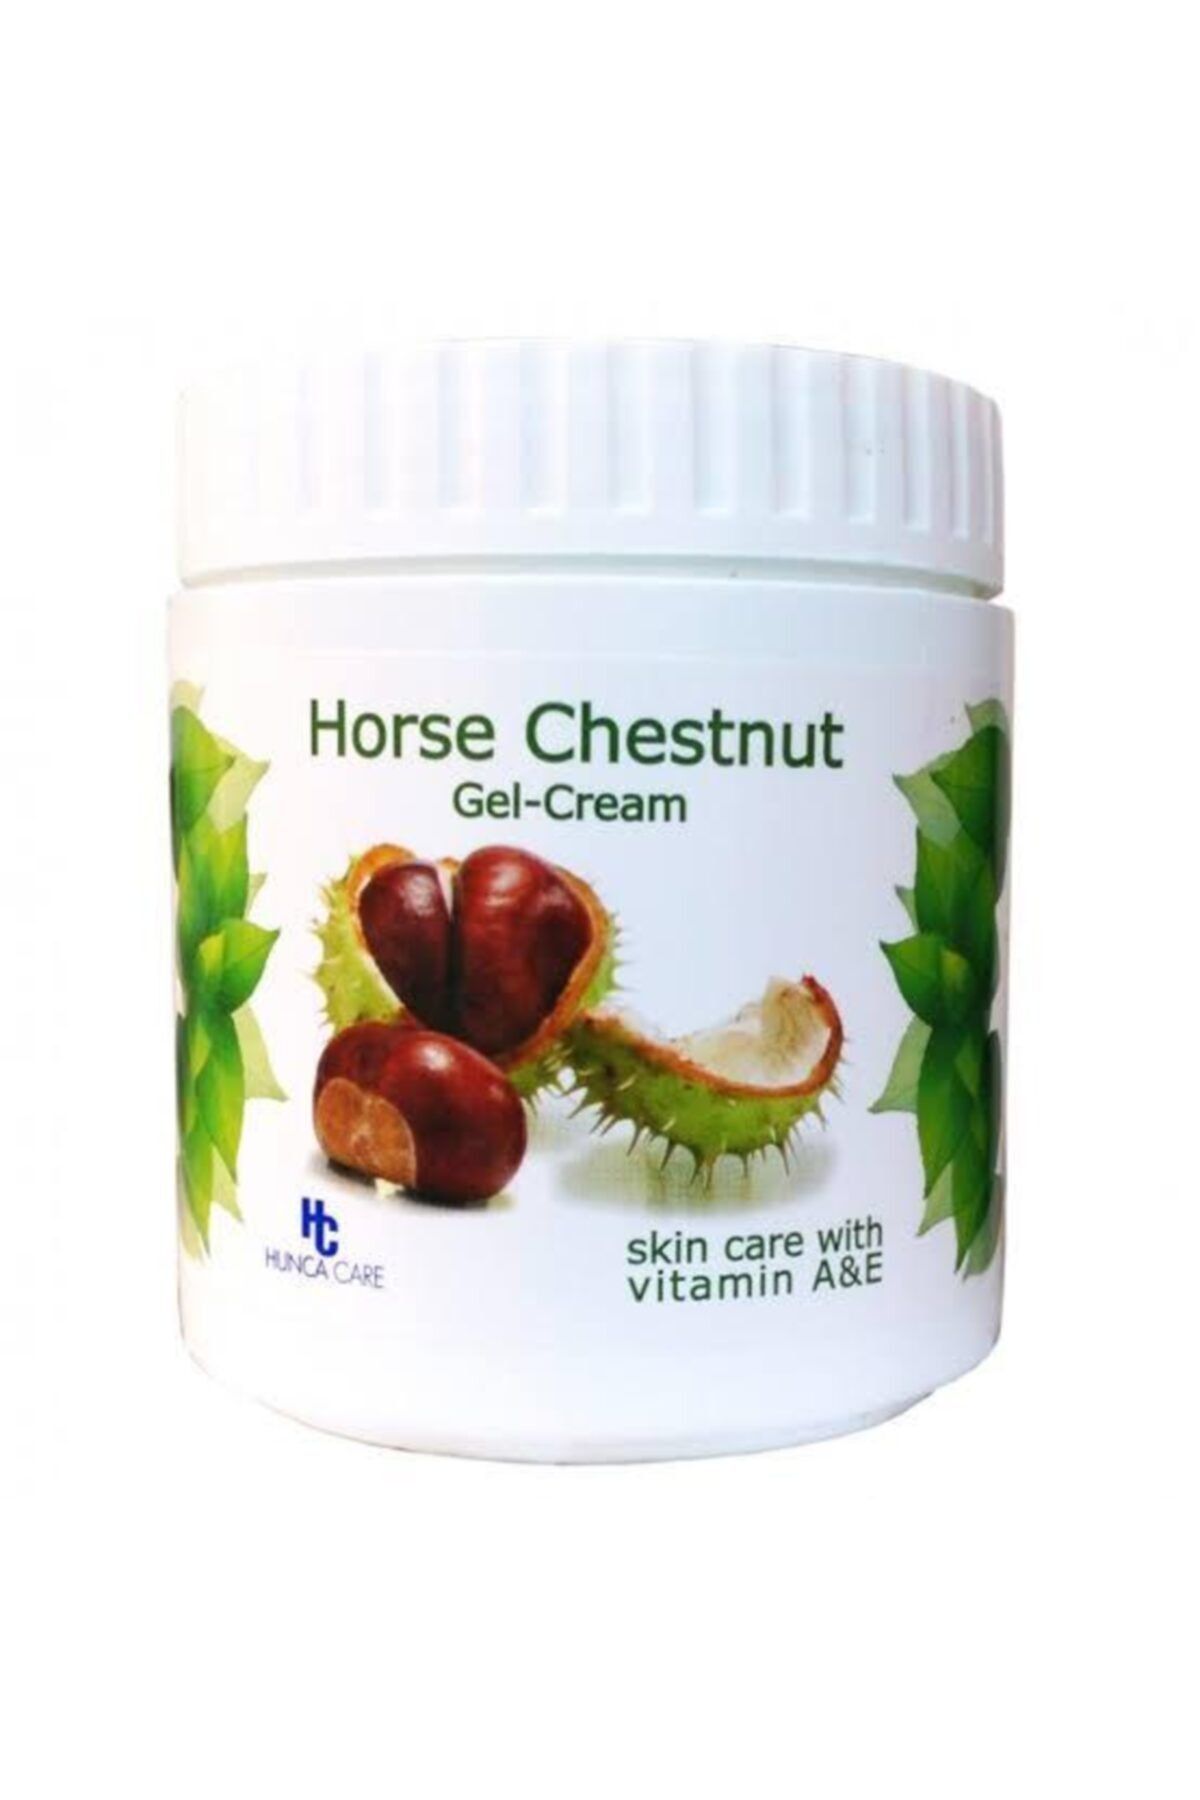 Hunca Care At Kestanesi Kremi 500 ml Horse Chestnut Gel - Cream